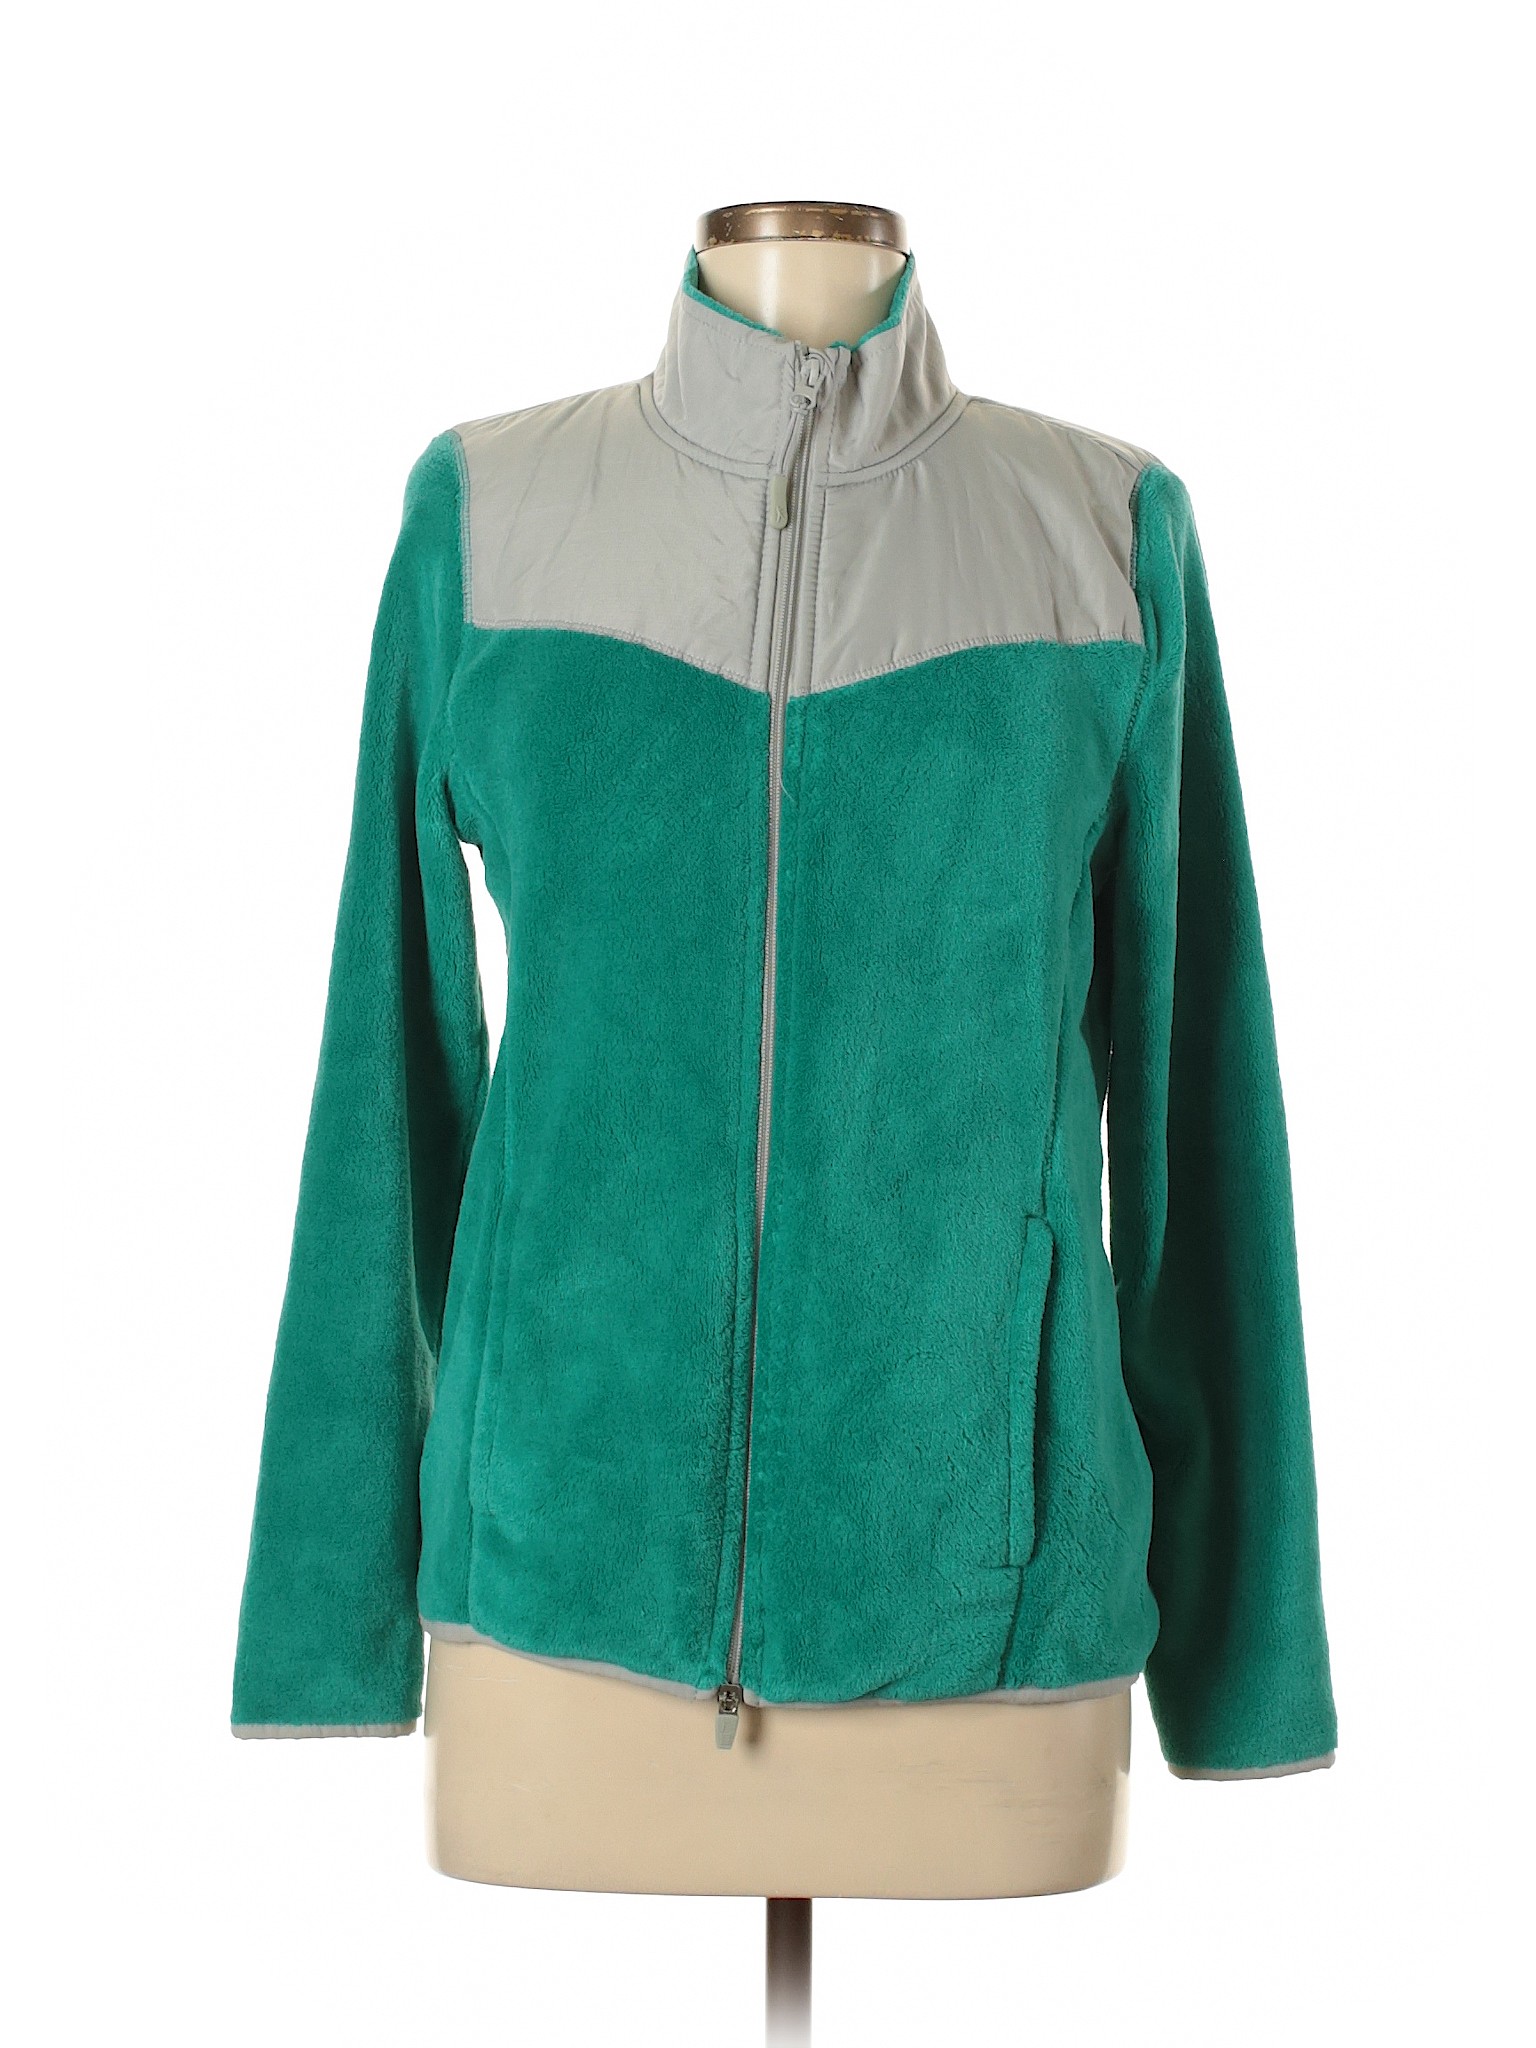 Danskin Now Women Green Jacket M | eBay